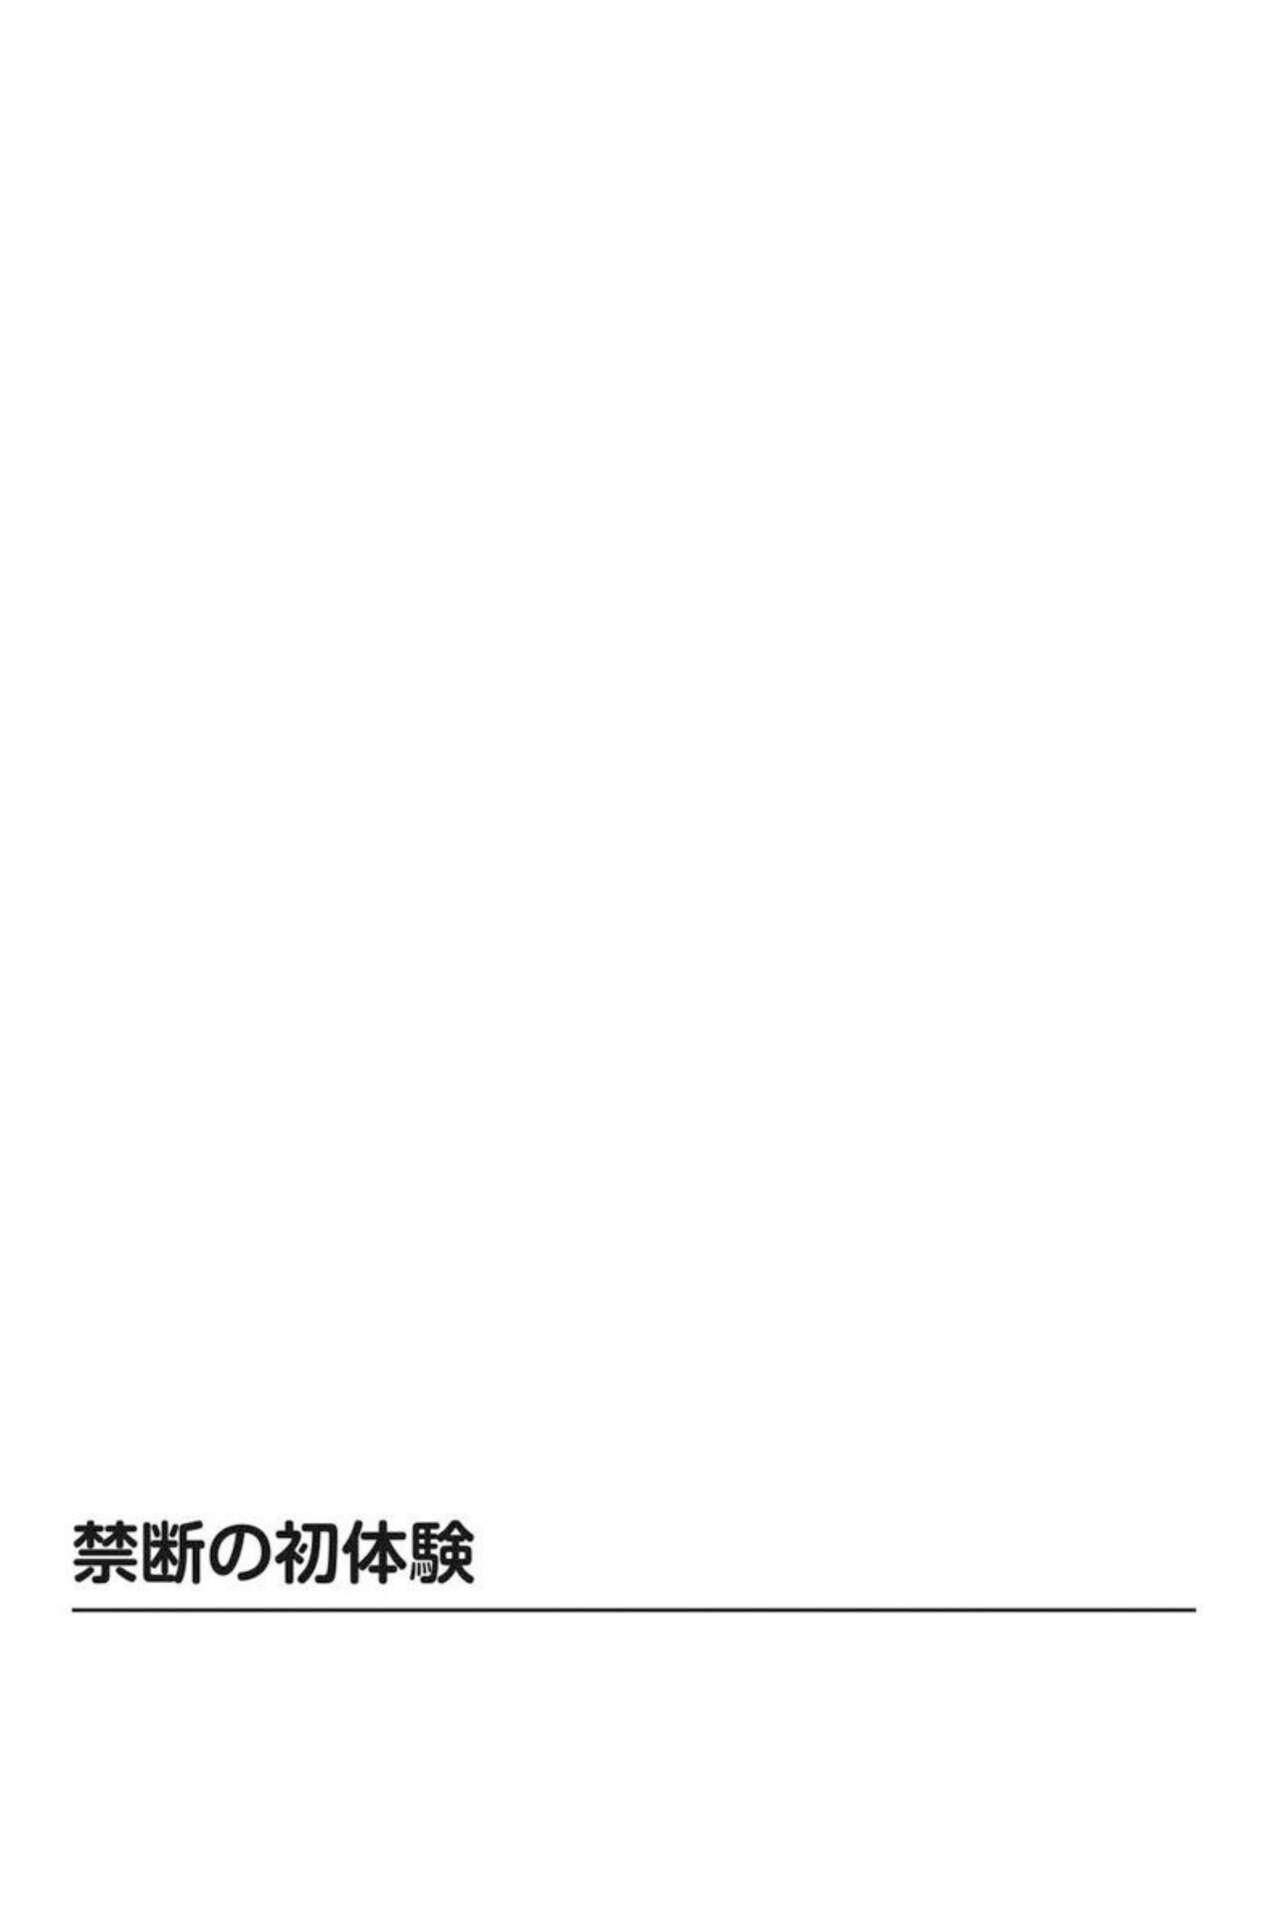 Bear Yūjin no Haha ni Yukkuri Dashi re 【 Bunsatsuban 】1 Creampies - Page 3